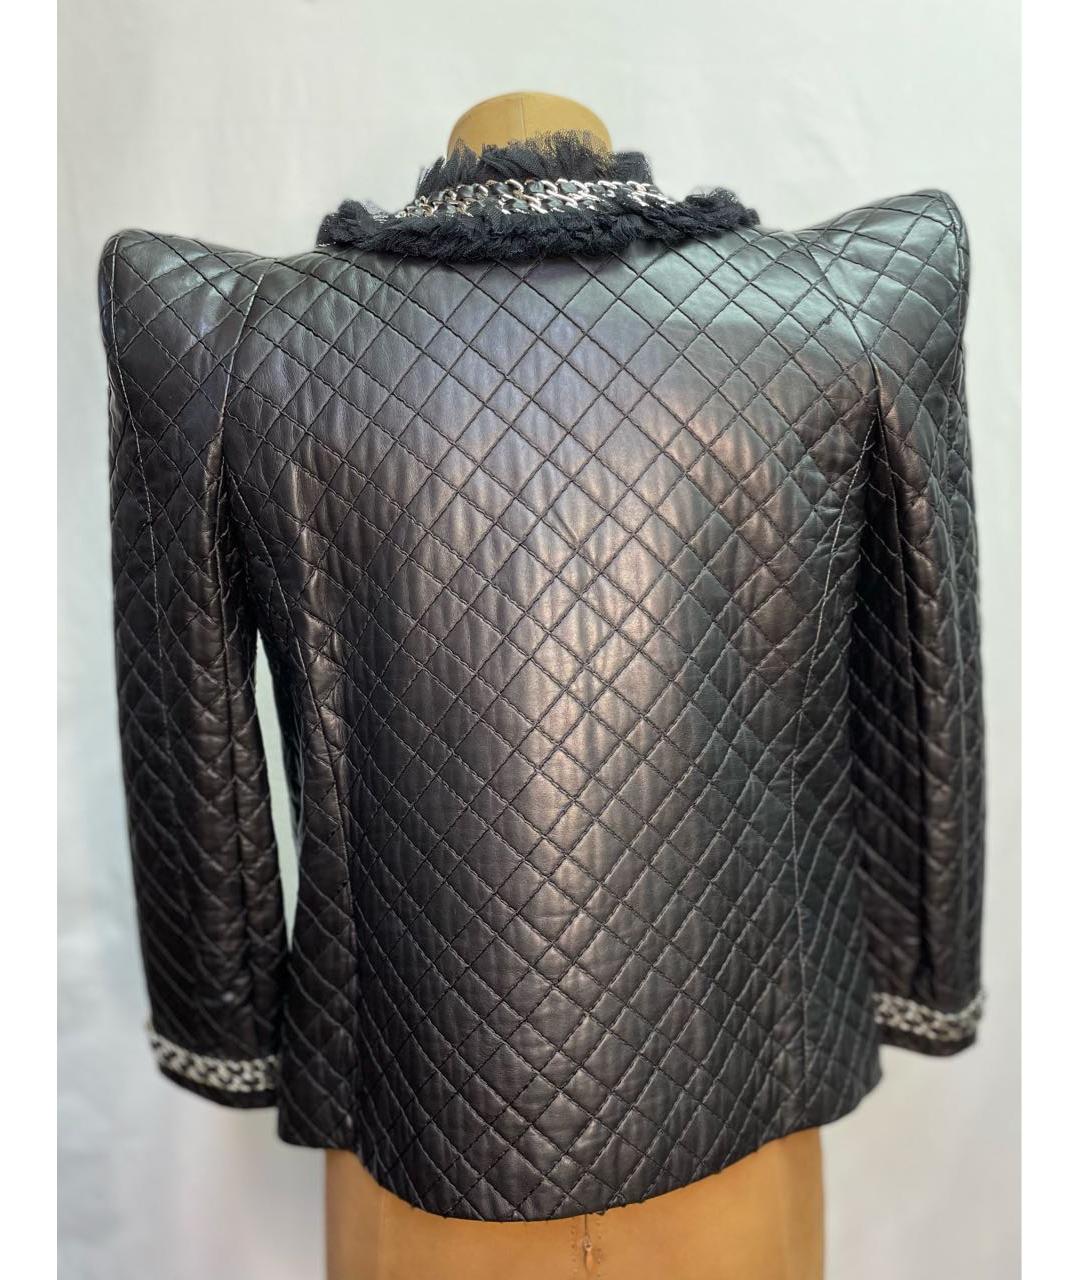 BALMAIN Черный кожаный жакет/пиджак, фото 2